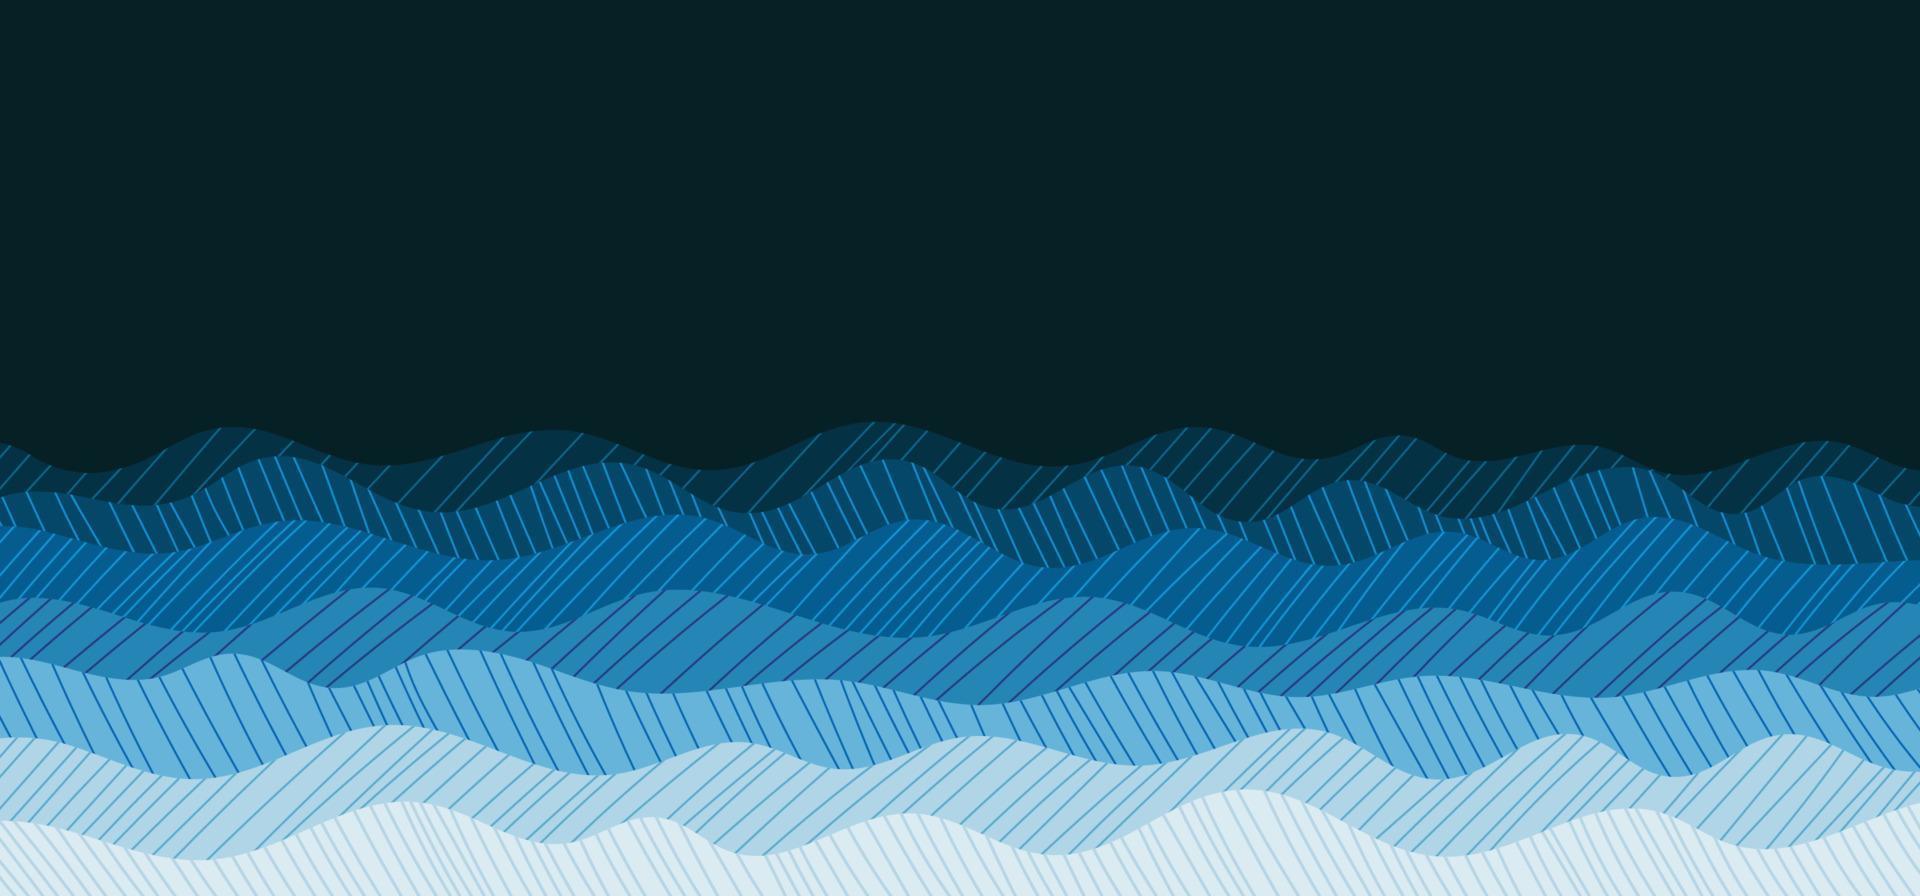 abstracte oceaan blauwe golvende stijl van tekening doodle patroon illustraties sjabloon. overlappend ontwerp van minimalistische stijlachtergrond. illustratie vector